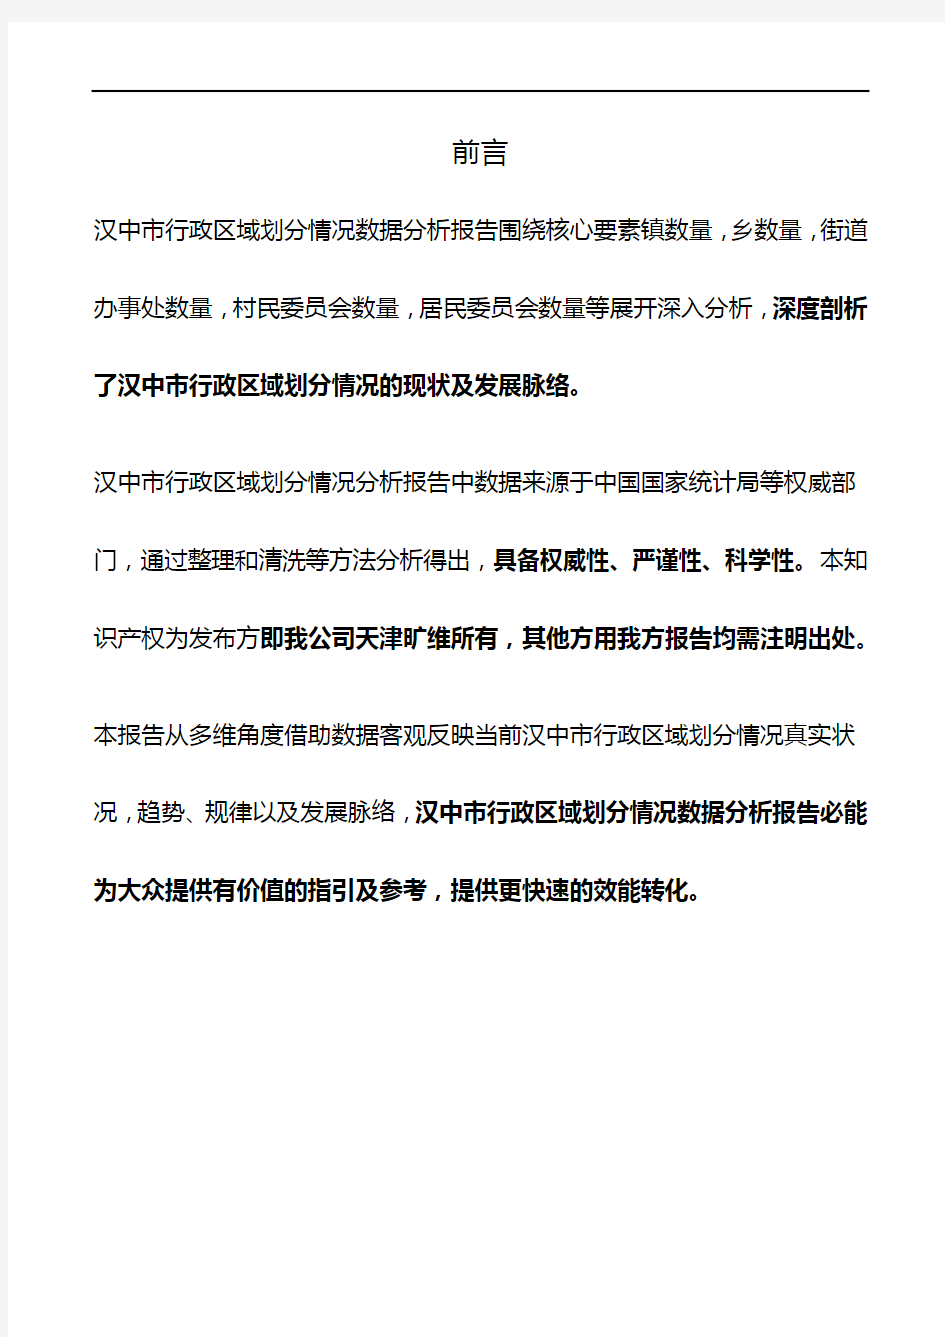 陕西省汉中市行政区域划分情况3年数据分析报告2020版